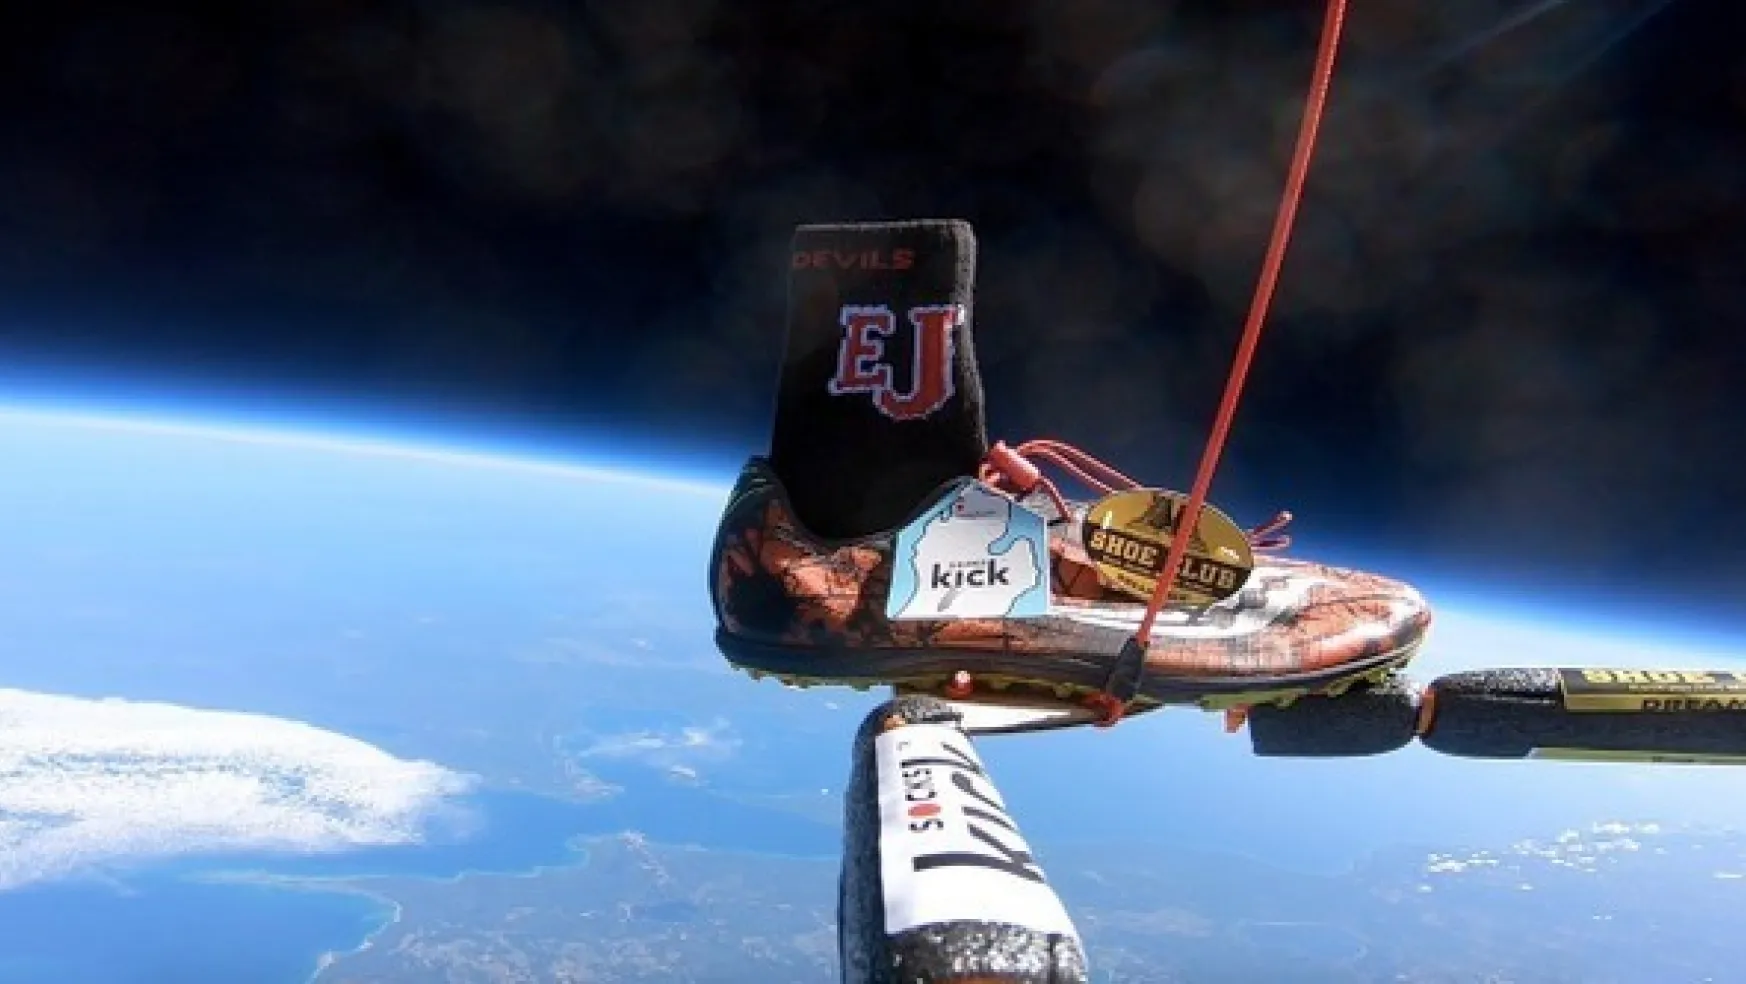 Bu da Oldu, Bir Türk Uzaya Çorap  Gönderdi